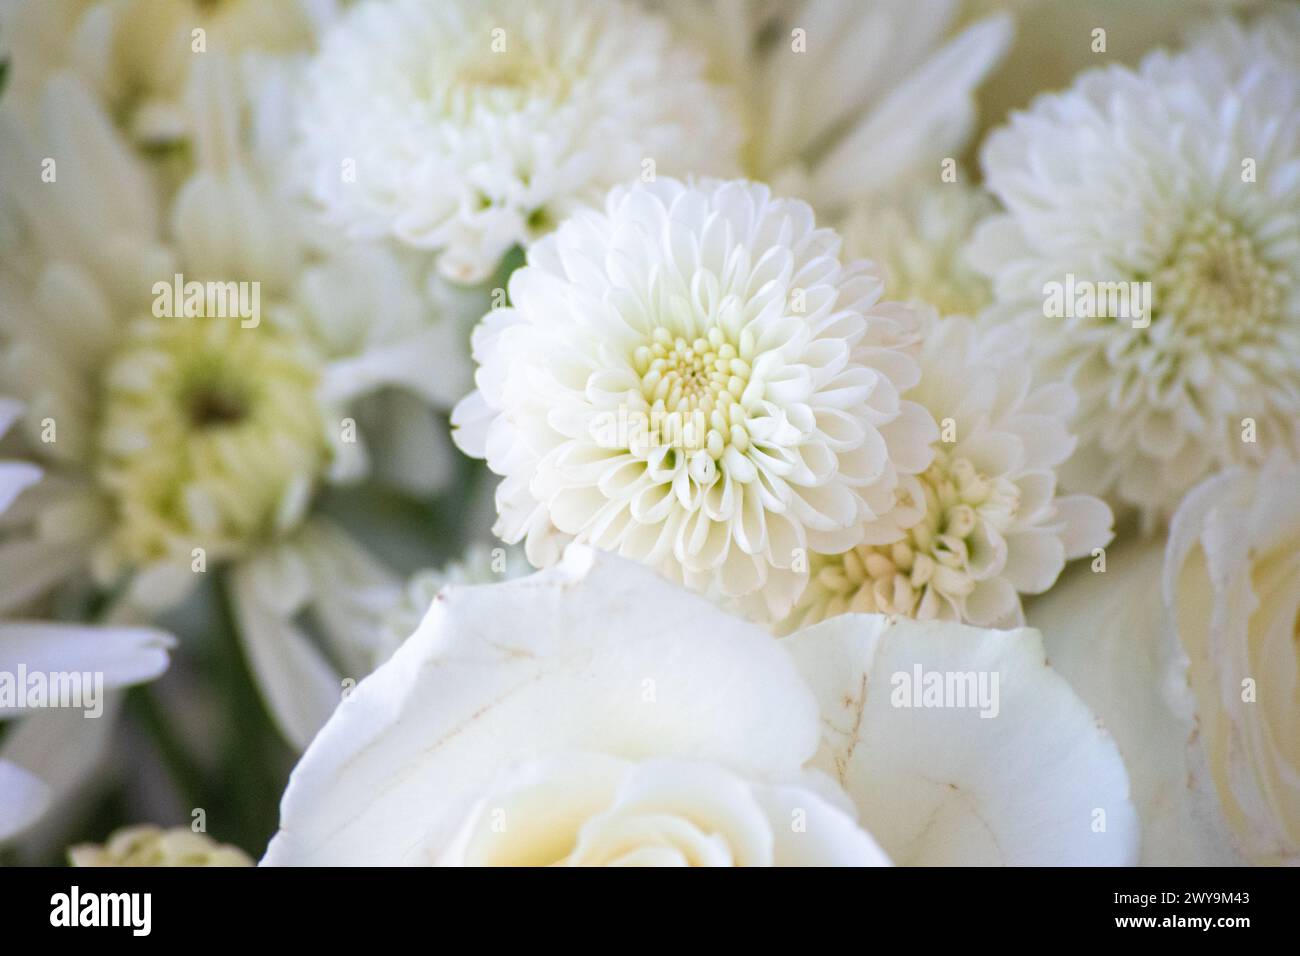 Élégants chrysanthèmes blancs et roses dans un arrangement floral Banque D'Images